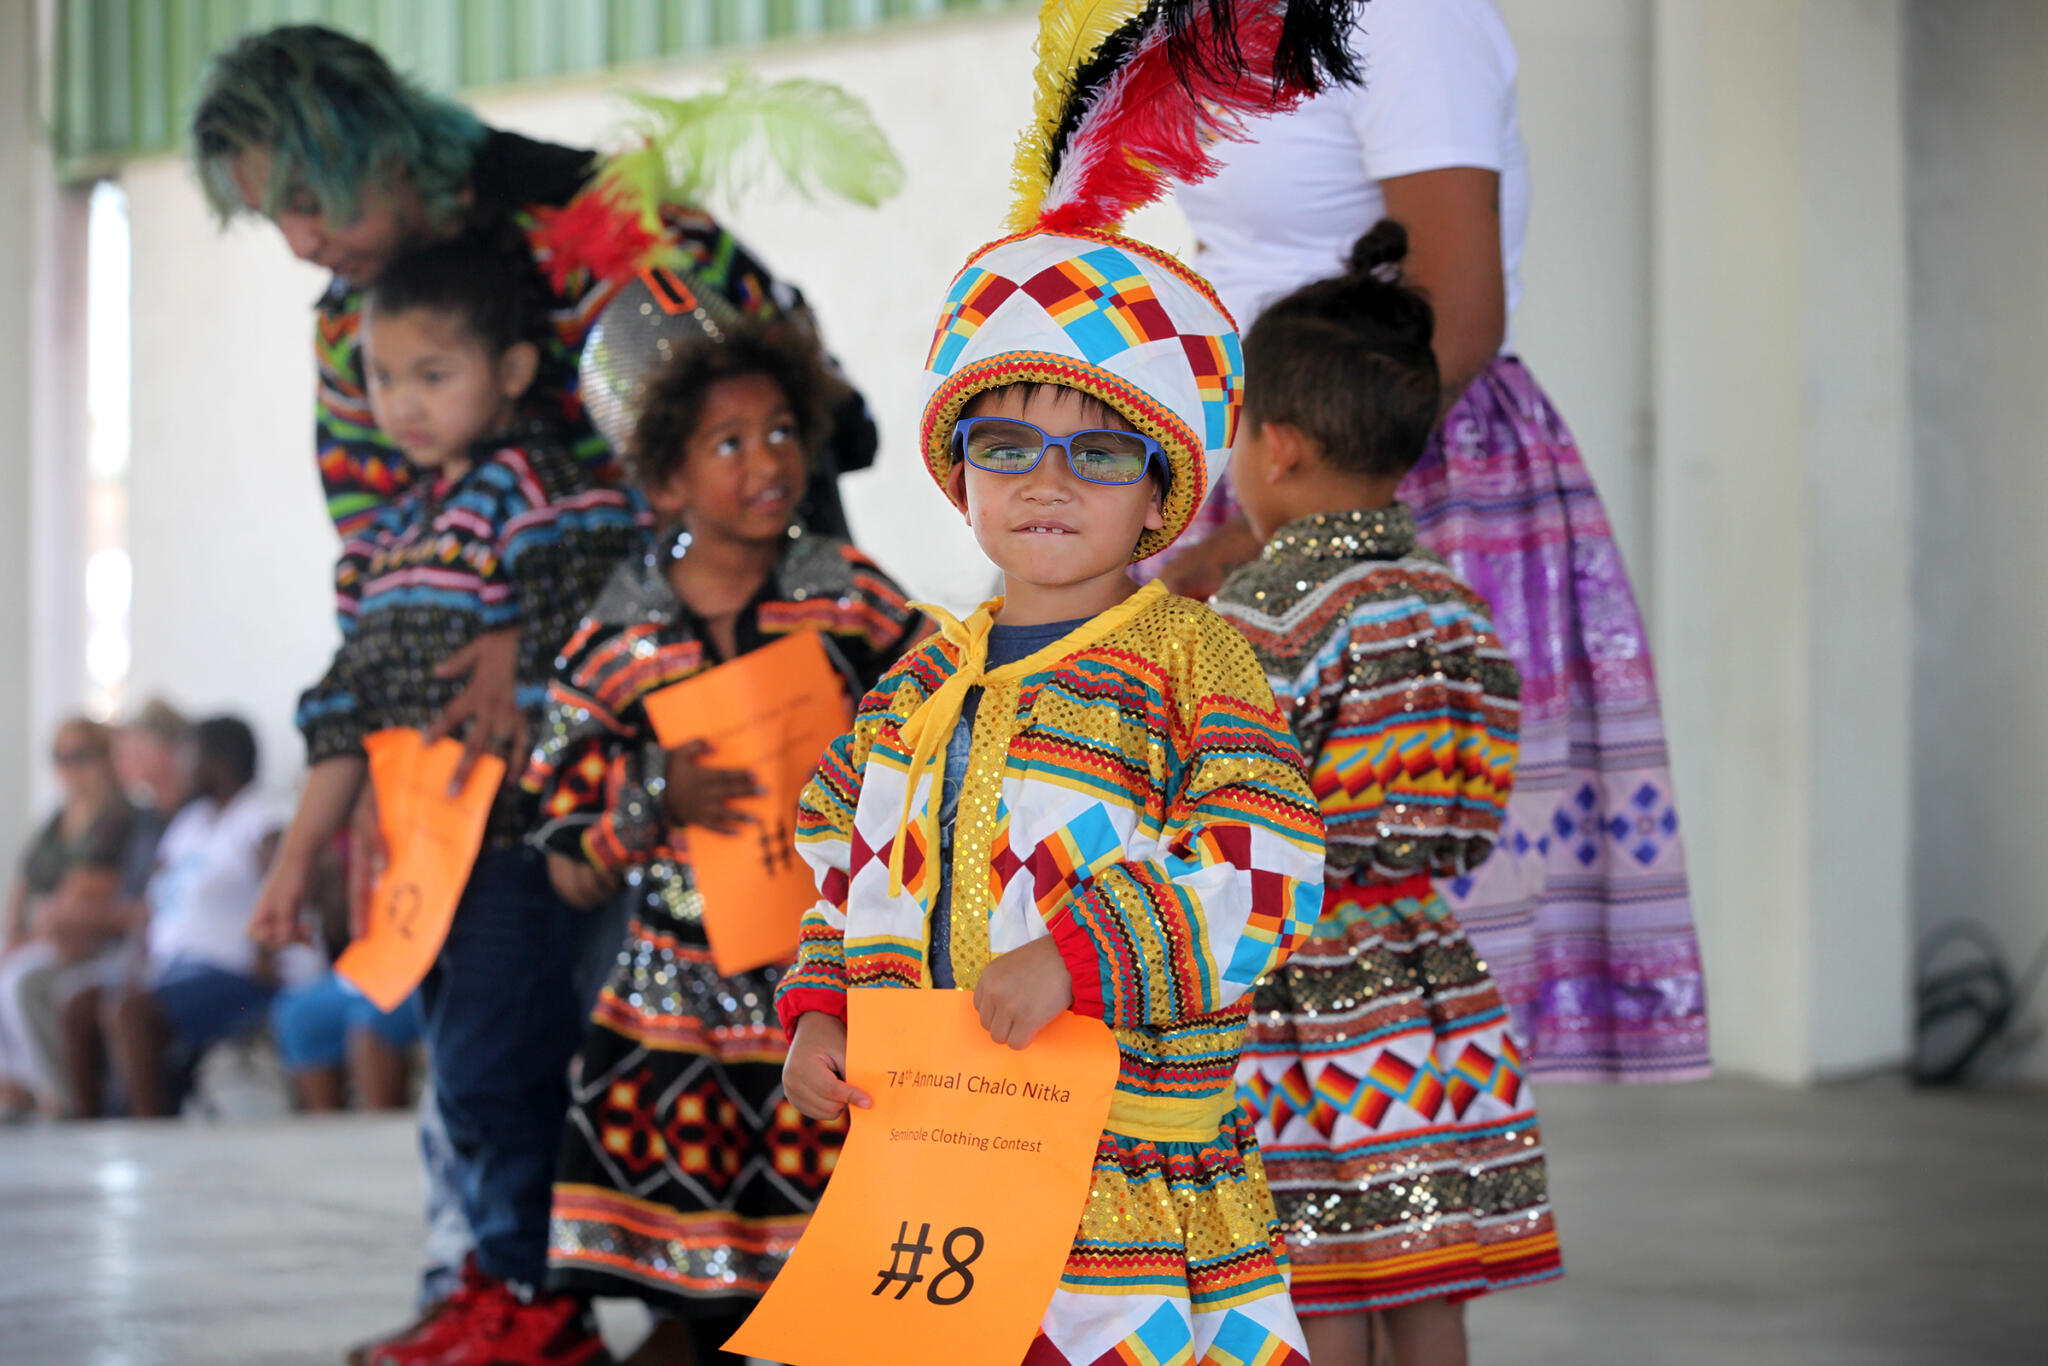 Seminole culture shines at Chalo Nitka • The Seminole Tribune